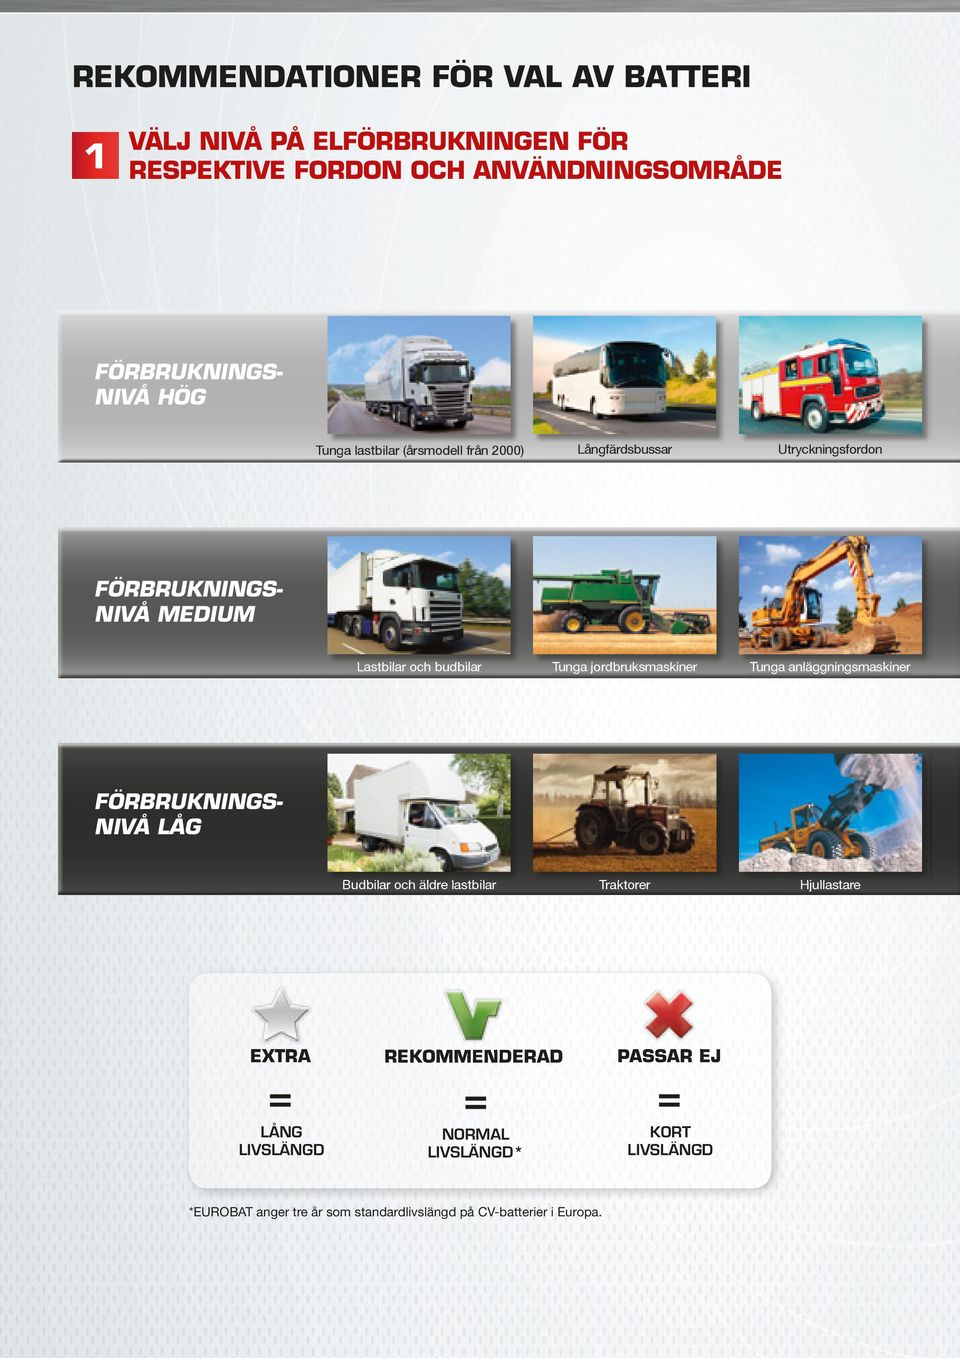 jordbruksmaskiner Tunga anläggningsmaskiner FÖRBRUKNINGS- NIVÅ LÅG Budbilar och äldre lastbilar Traktorer Hjullastare EXTRA = LÅNG